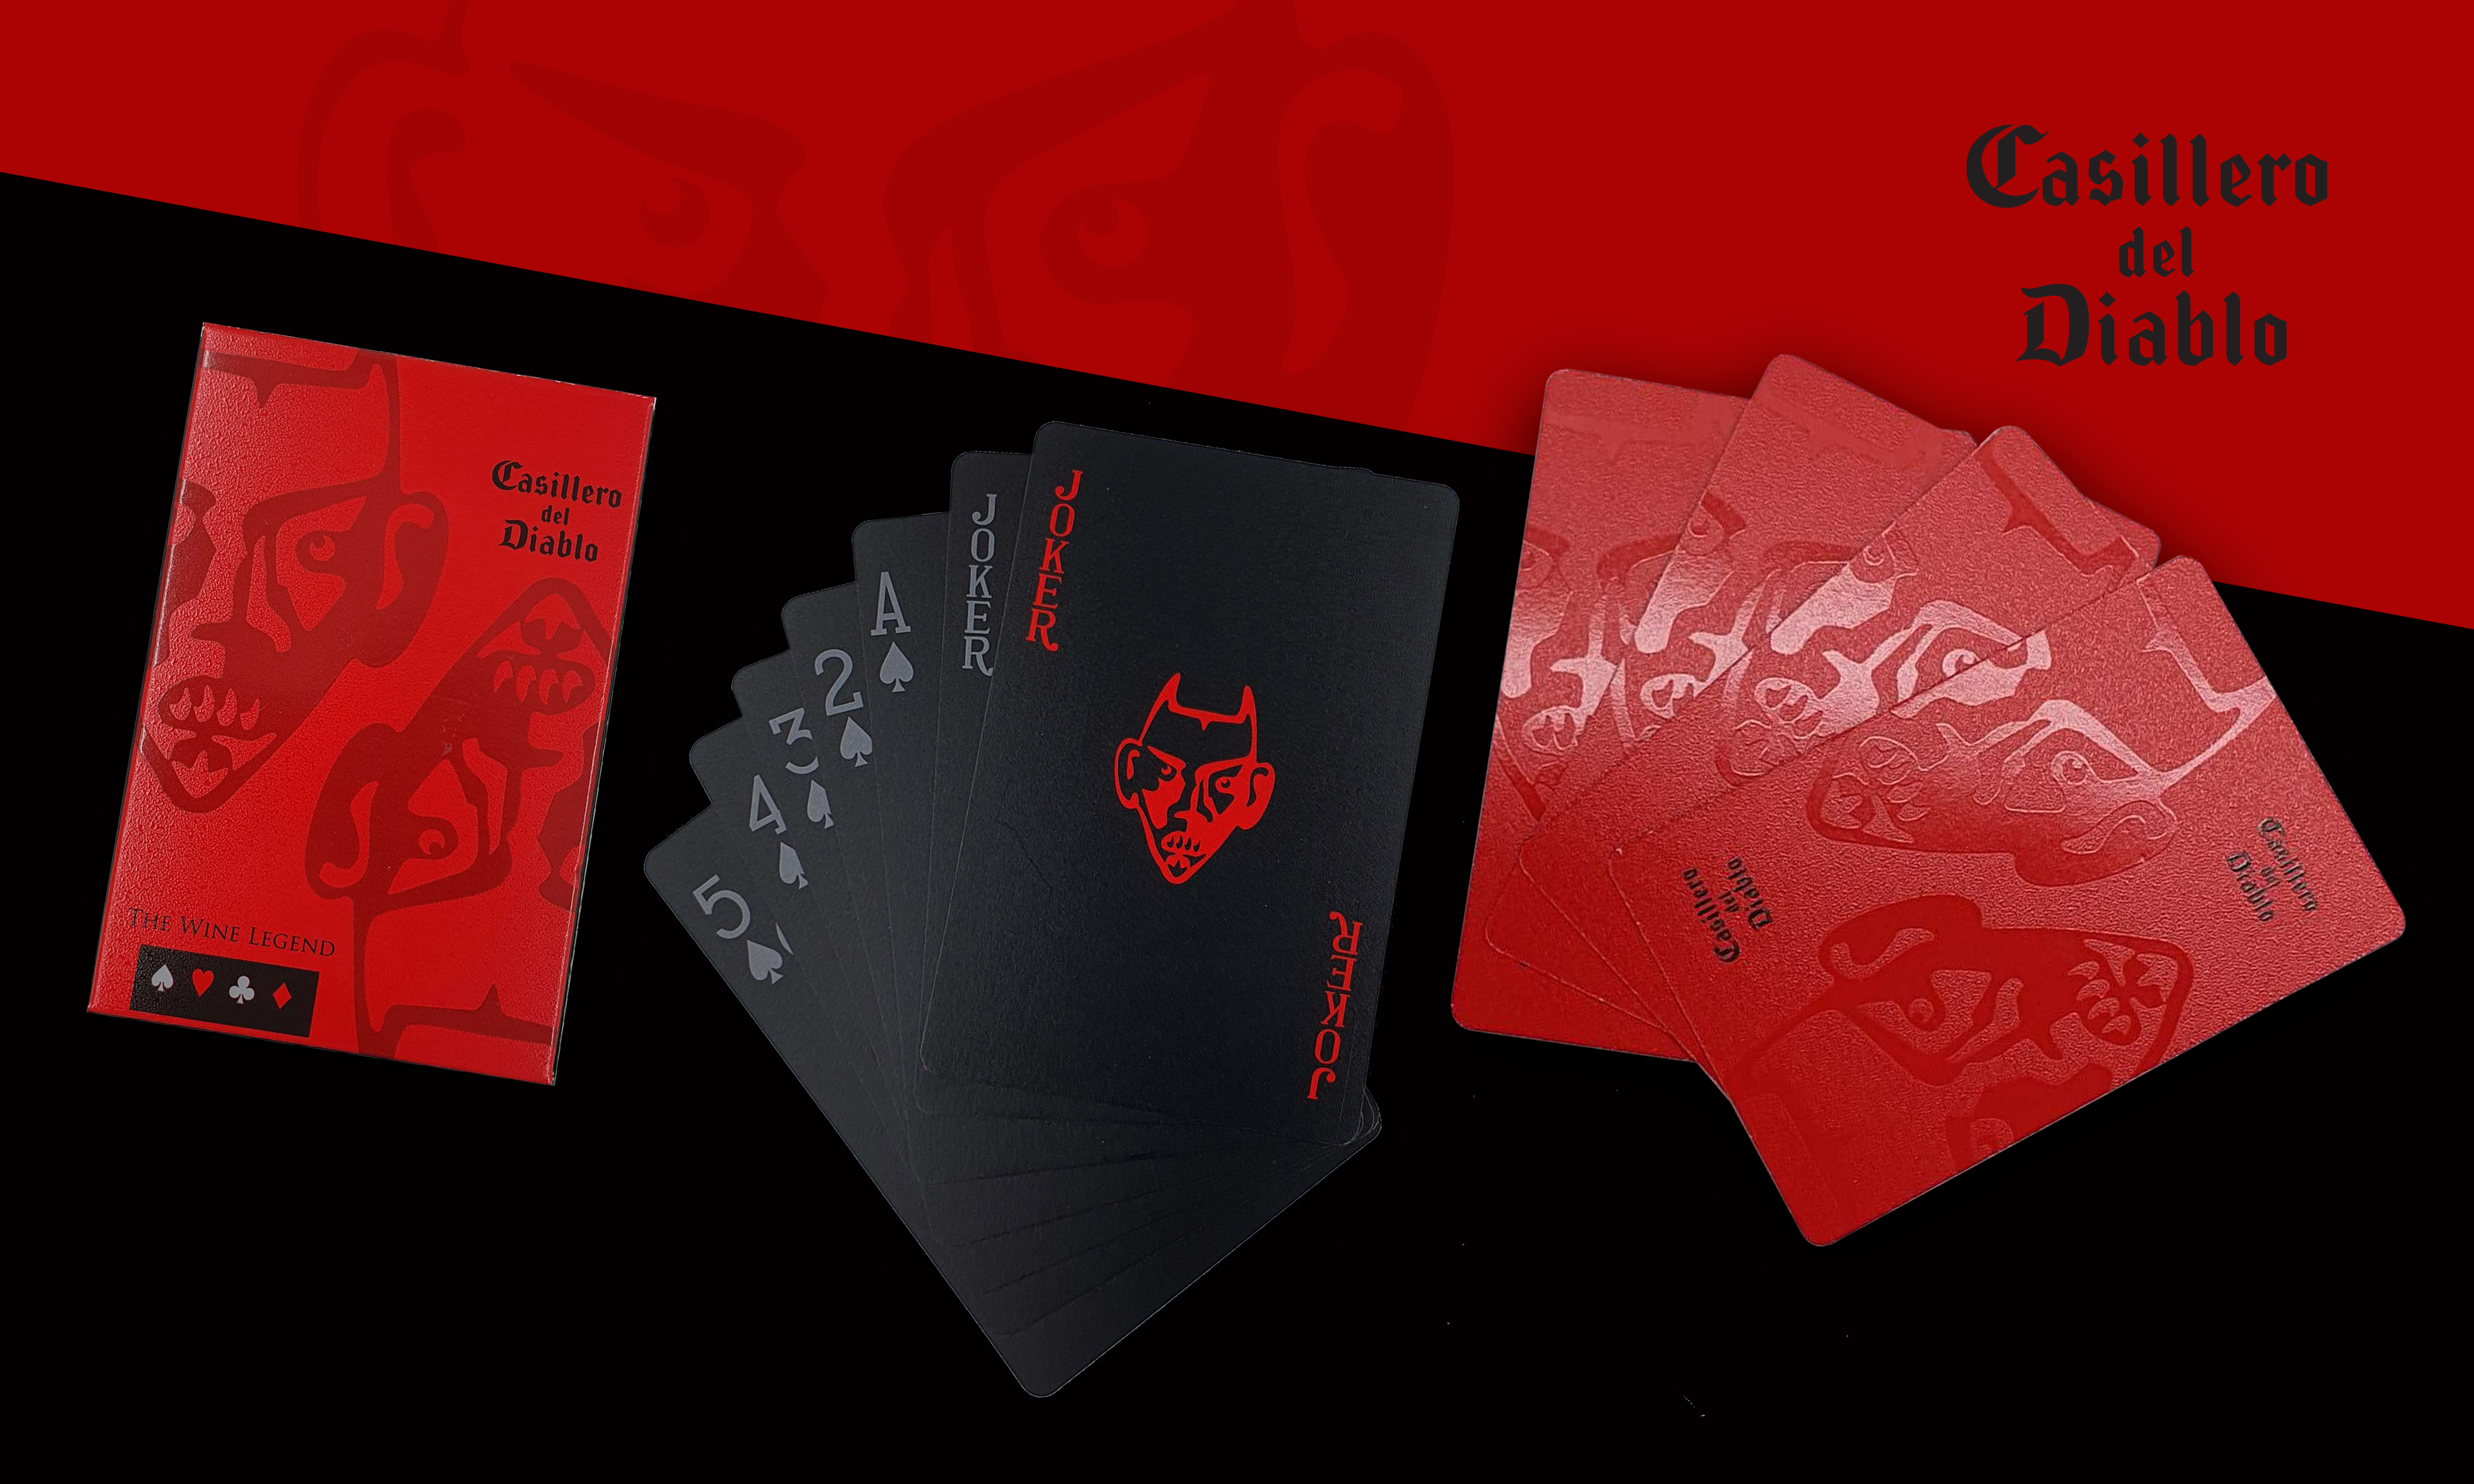 Casillero del Diablo Playing Cards